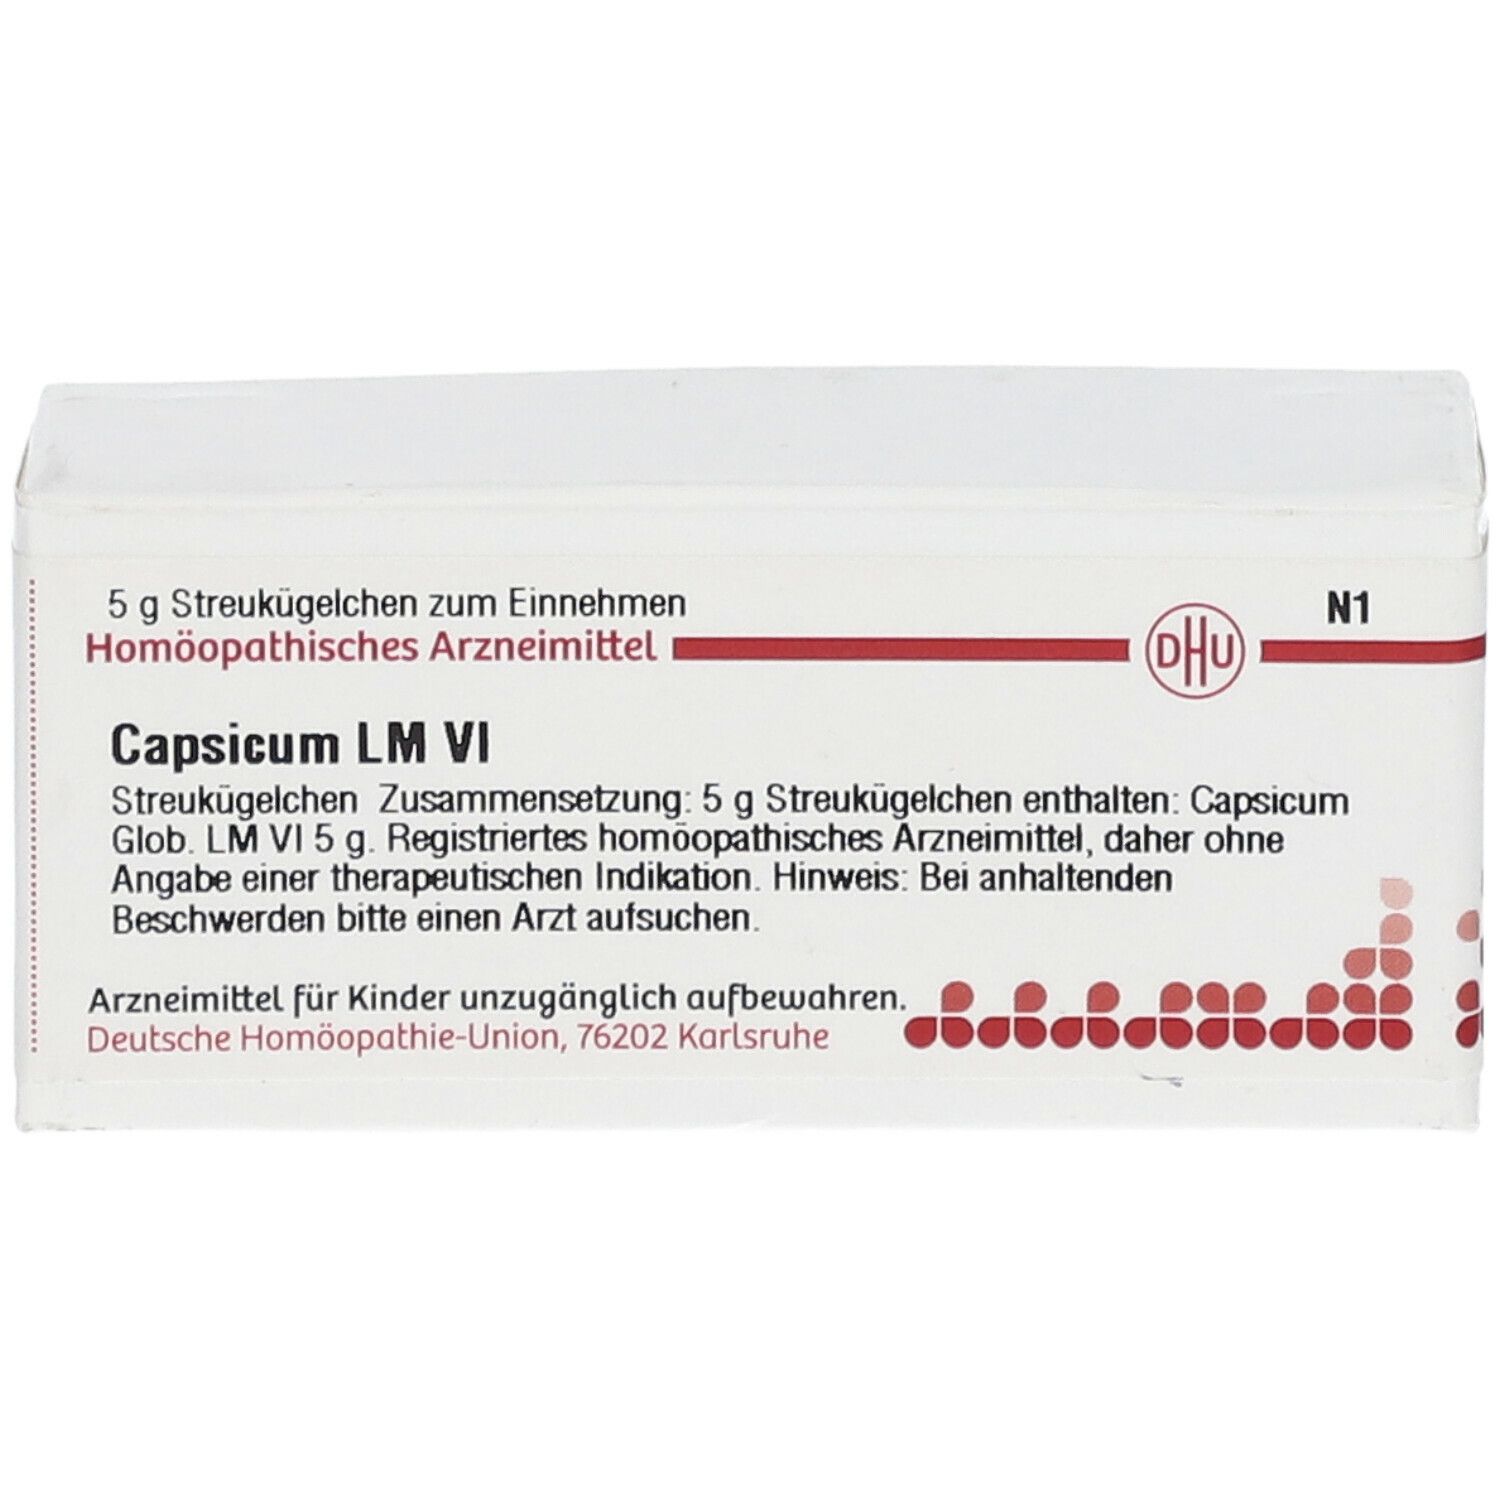 DHU Capsicum LM VI